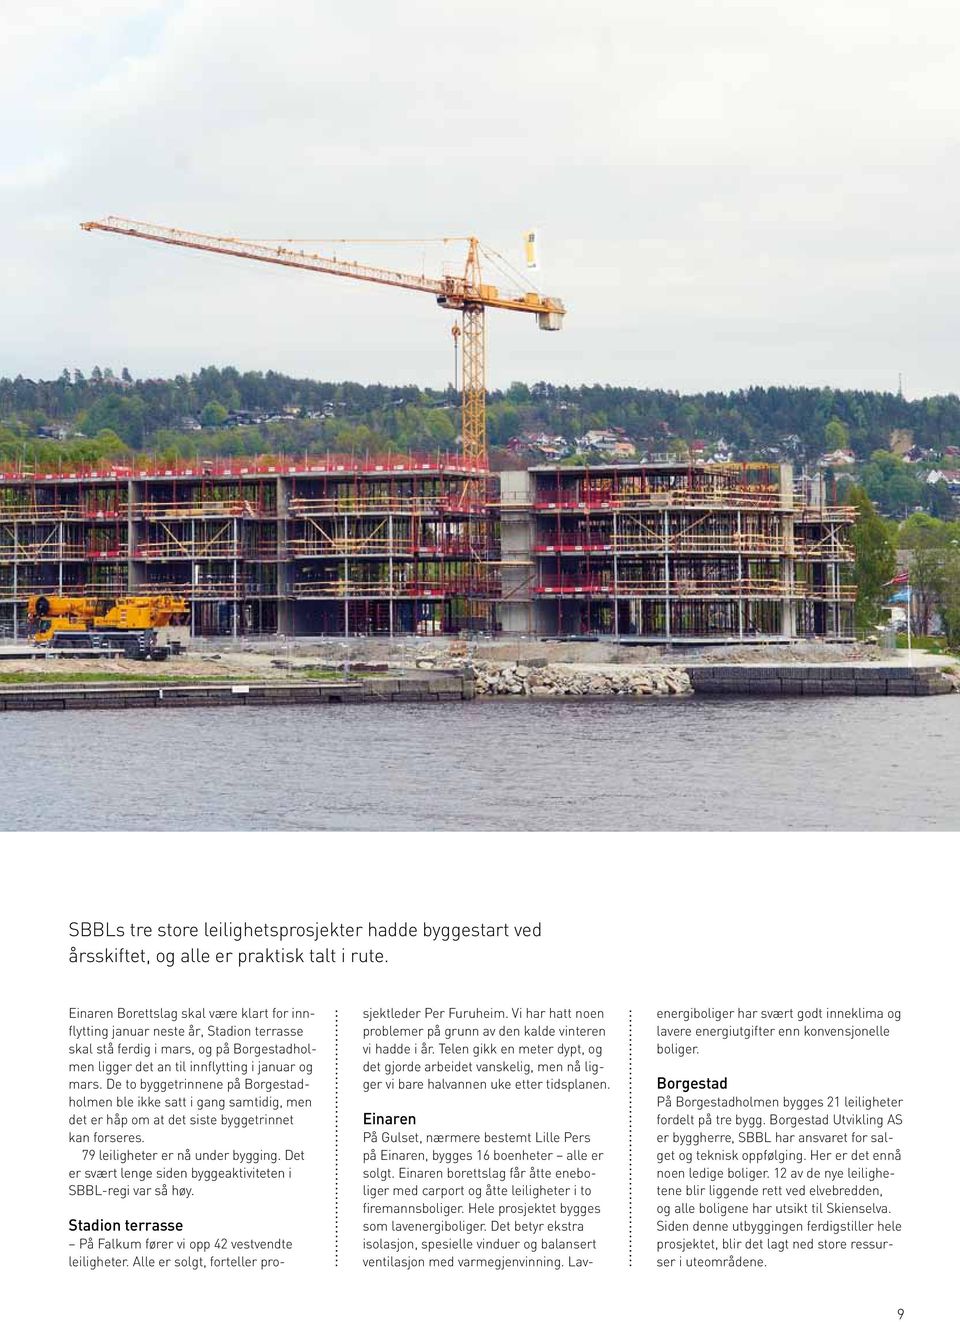 De to byggetrinnene på Borgestadholmen ble ikke satt i gang samtidig, men det er håp om at det siste byggetrinnet kan forseres. 79 leiligheter er nå under bygging.